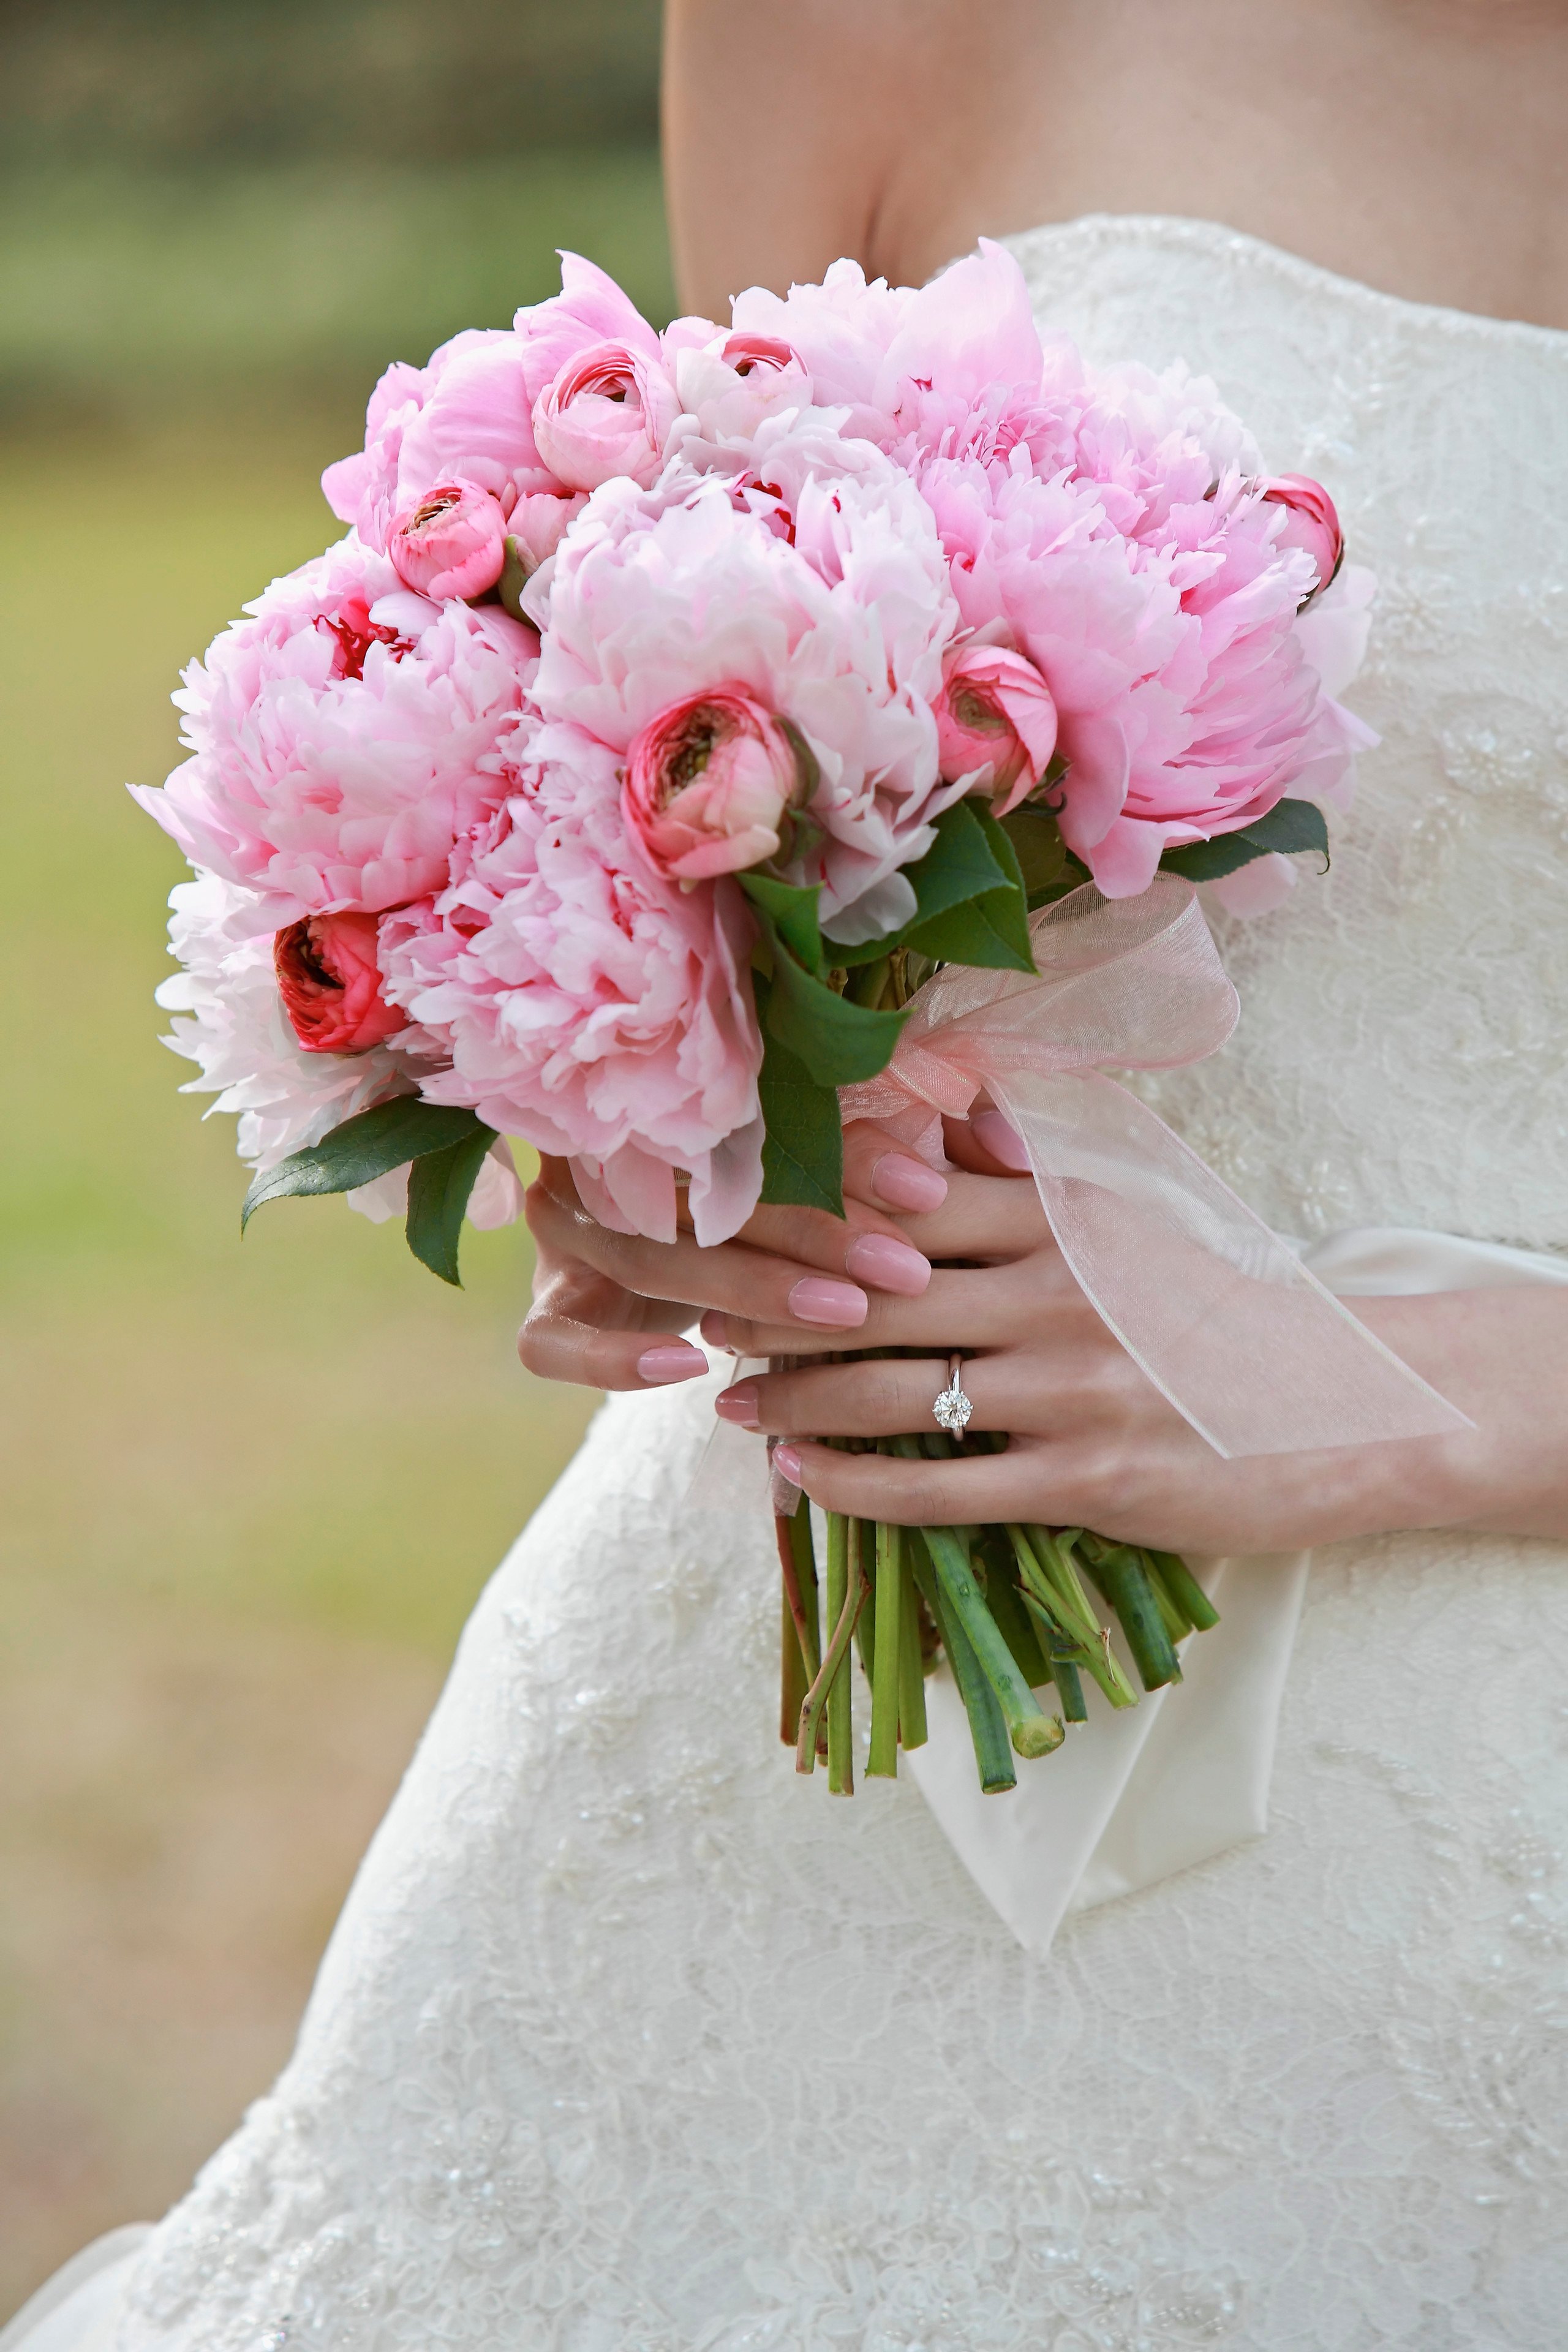 FOTO] Bouquet da sposa con peonie: tante idee per te!